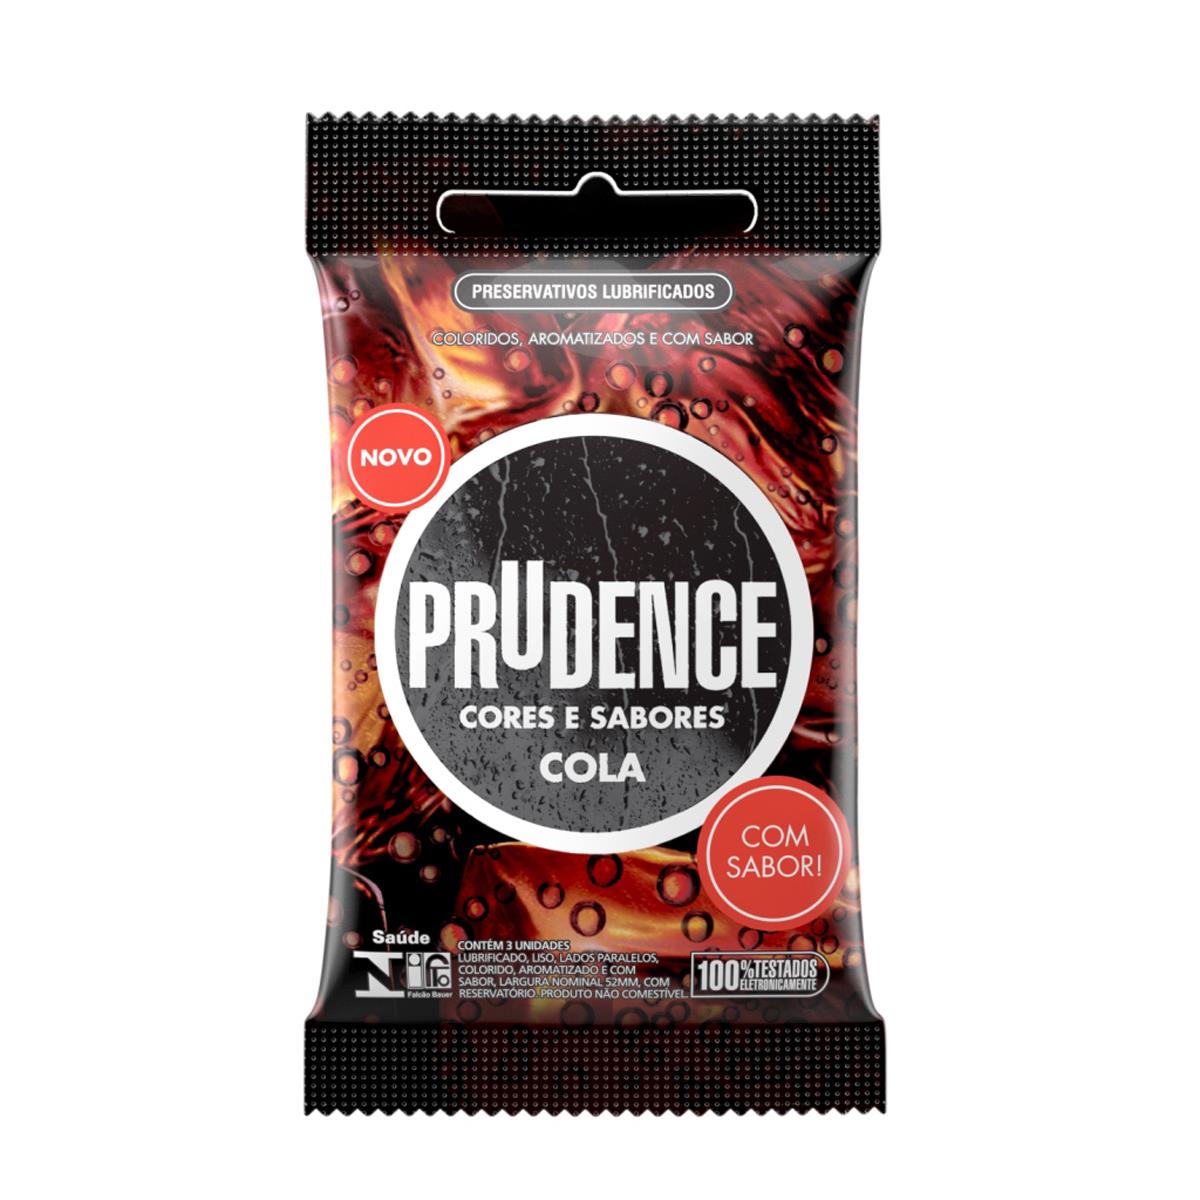 Preservativos Cores e Sabores Cola Prudence